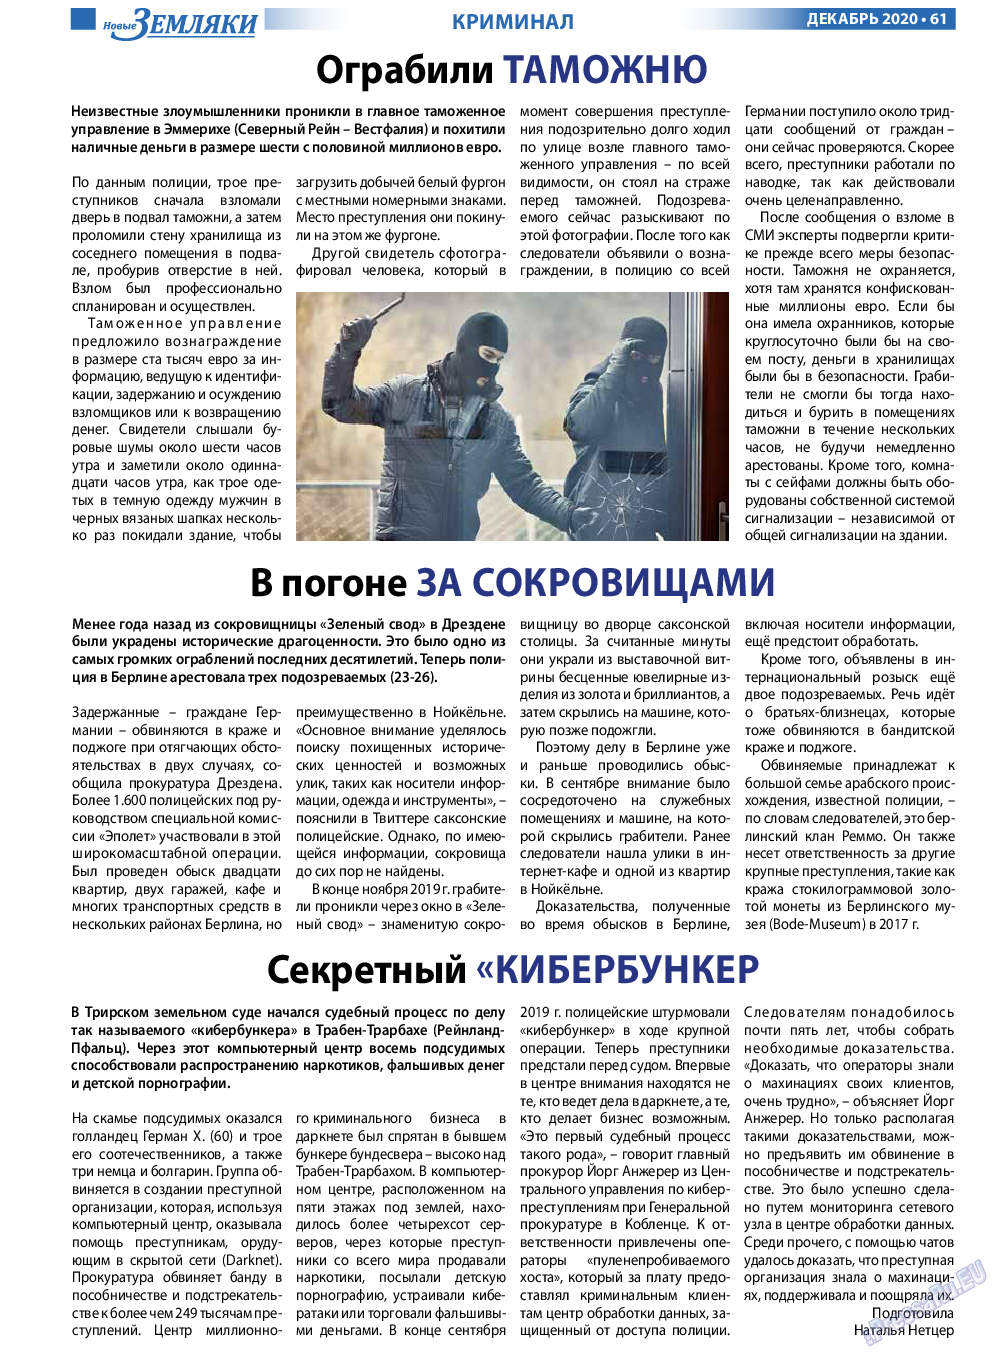 Новые Земляки, газета. 2020 №12 стр.61